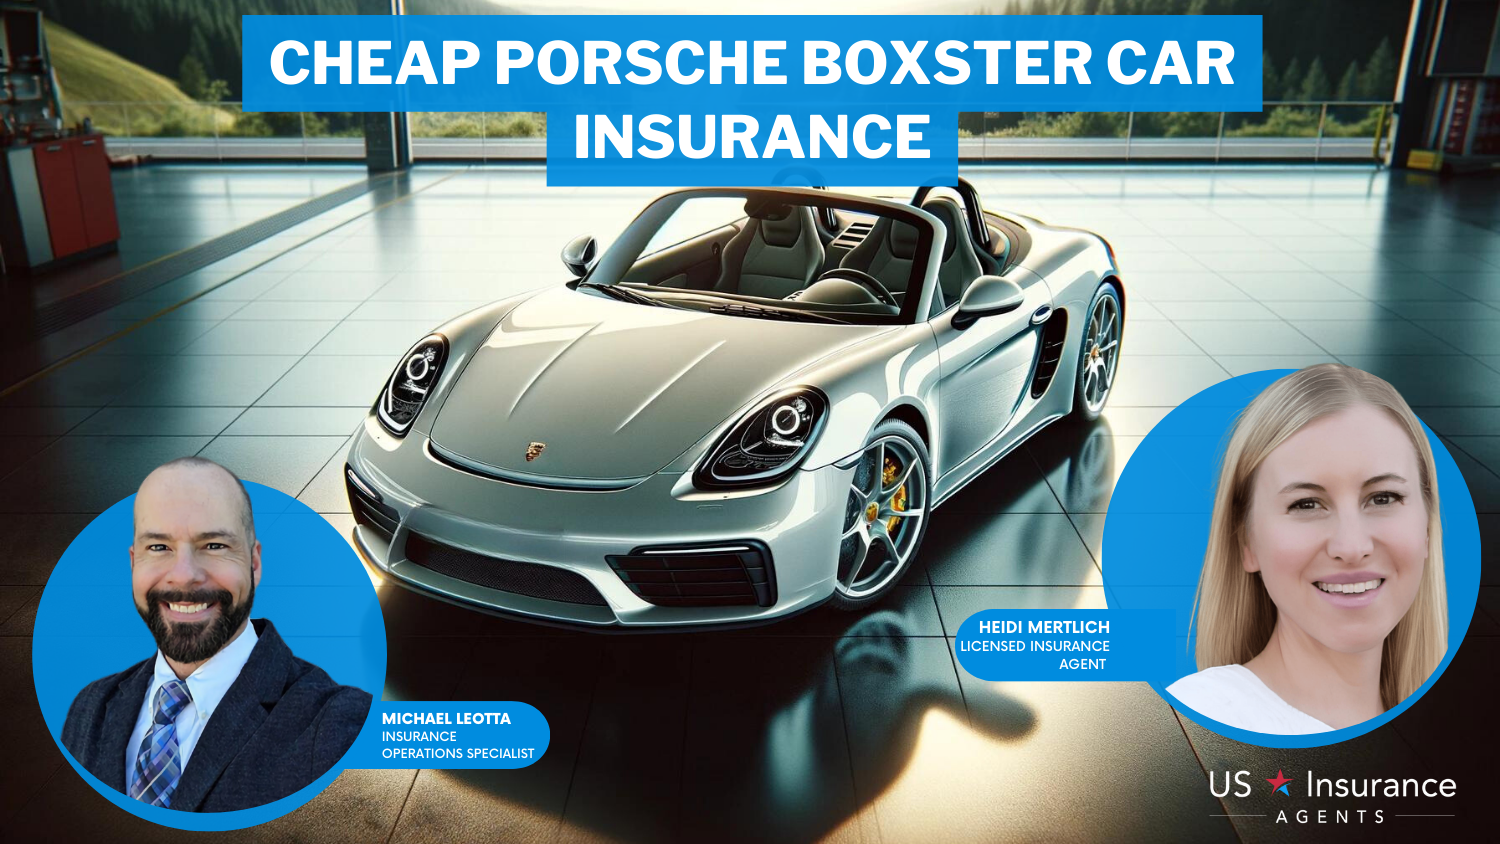 Cheap Porsche Boxster Car Insurance: American Family, State Farm, and Progressive